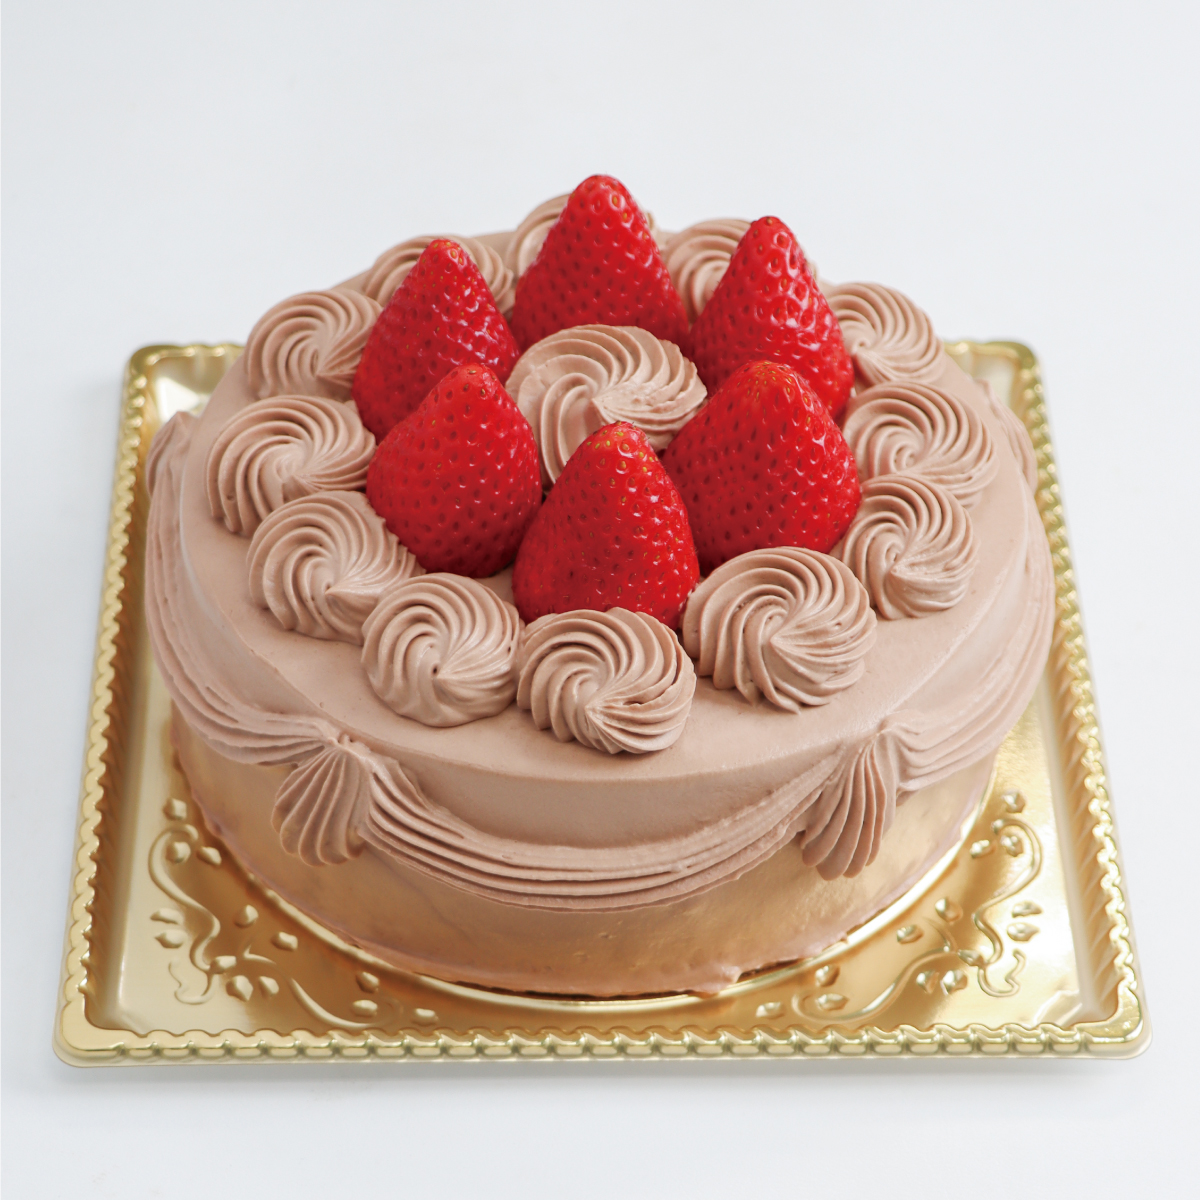 チョコデコレーションケーキ<15cm>